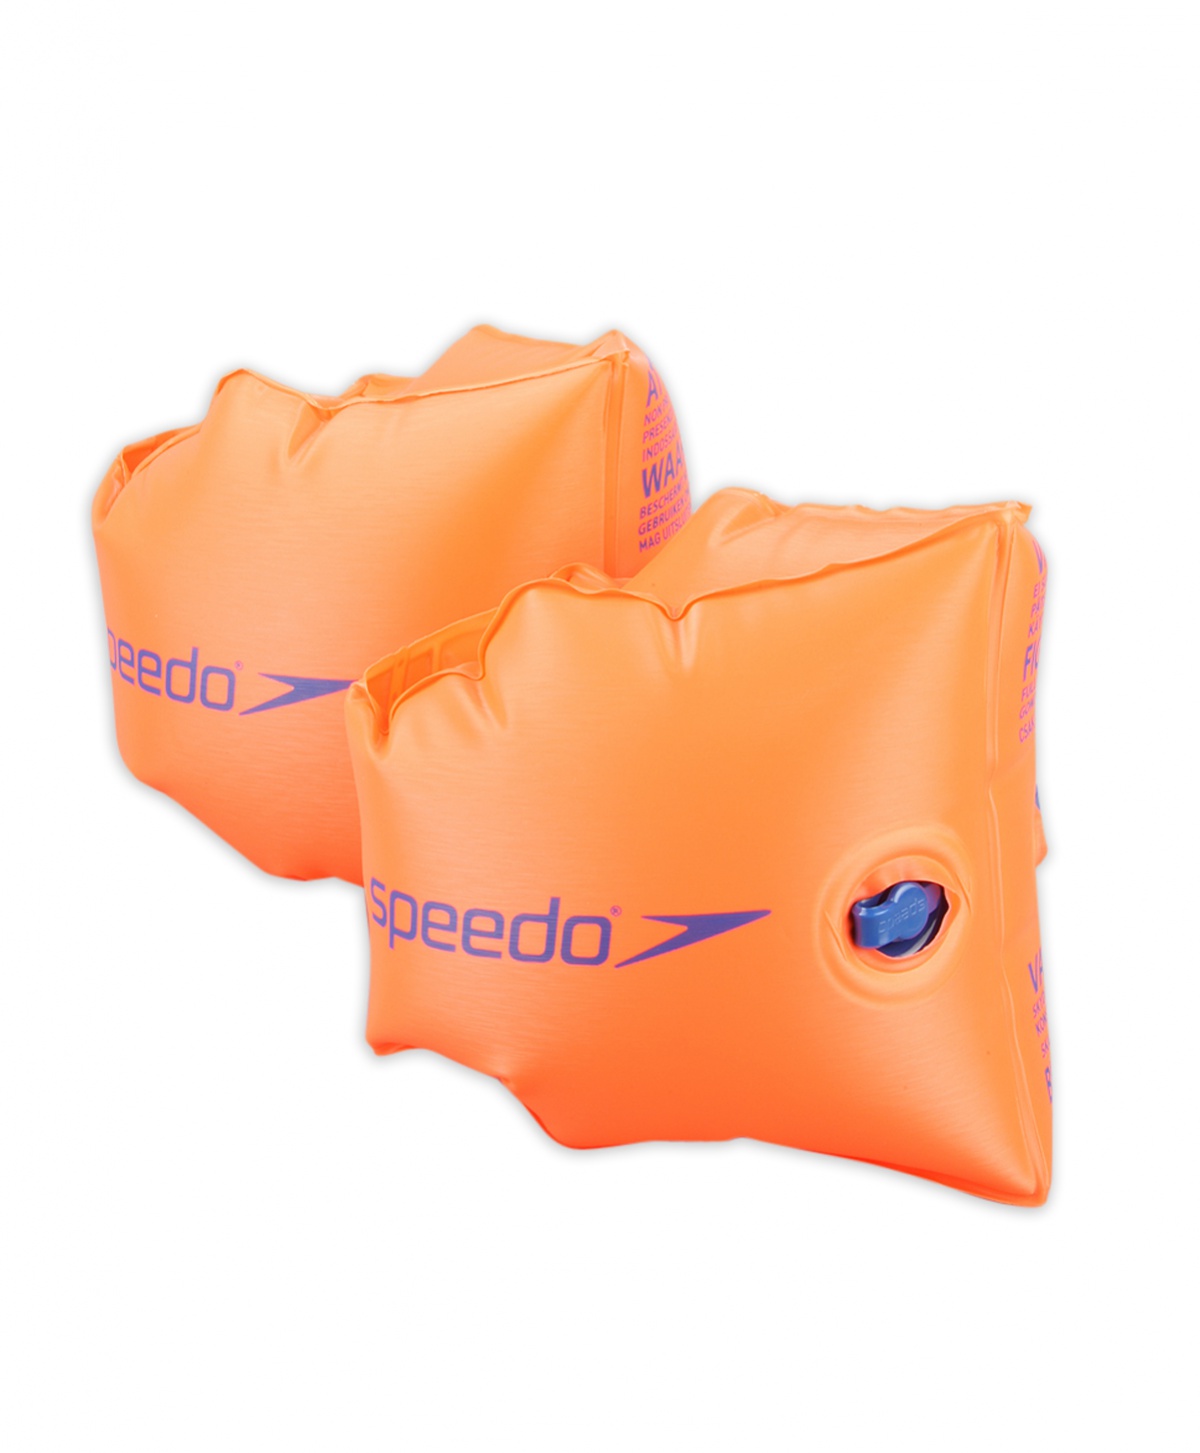 Nafukovací rukávky Speedo Armbands Orange 2-6 + prodejny Praha, Brno, Plzeň a Ostrava výměna a vrácení do 30 dnů s poštovným zdarma